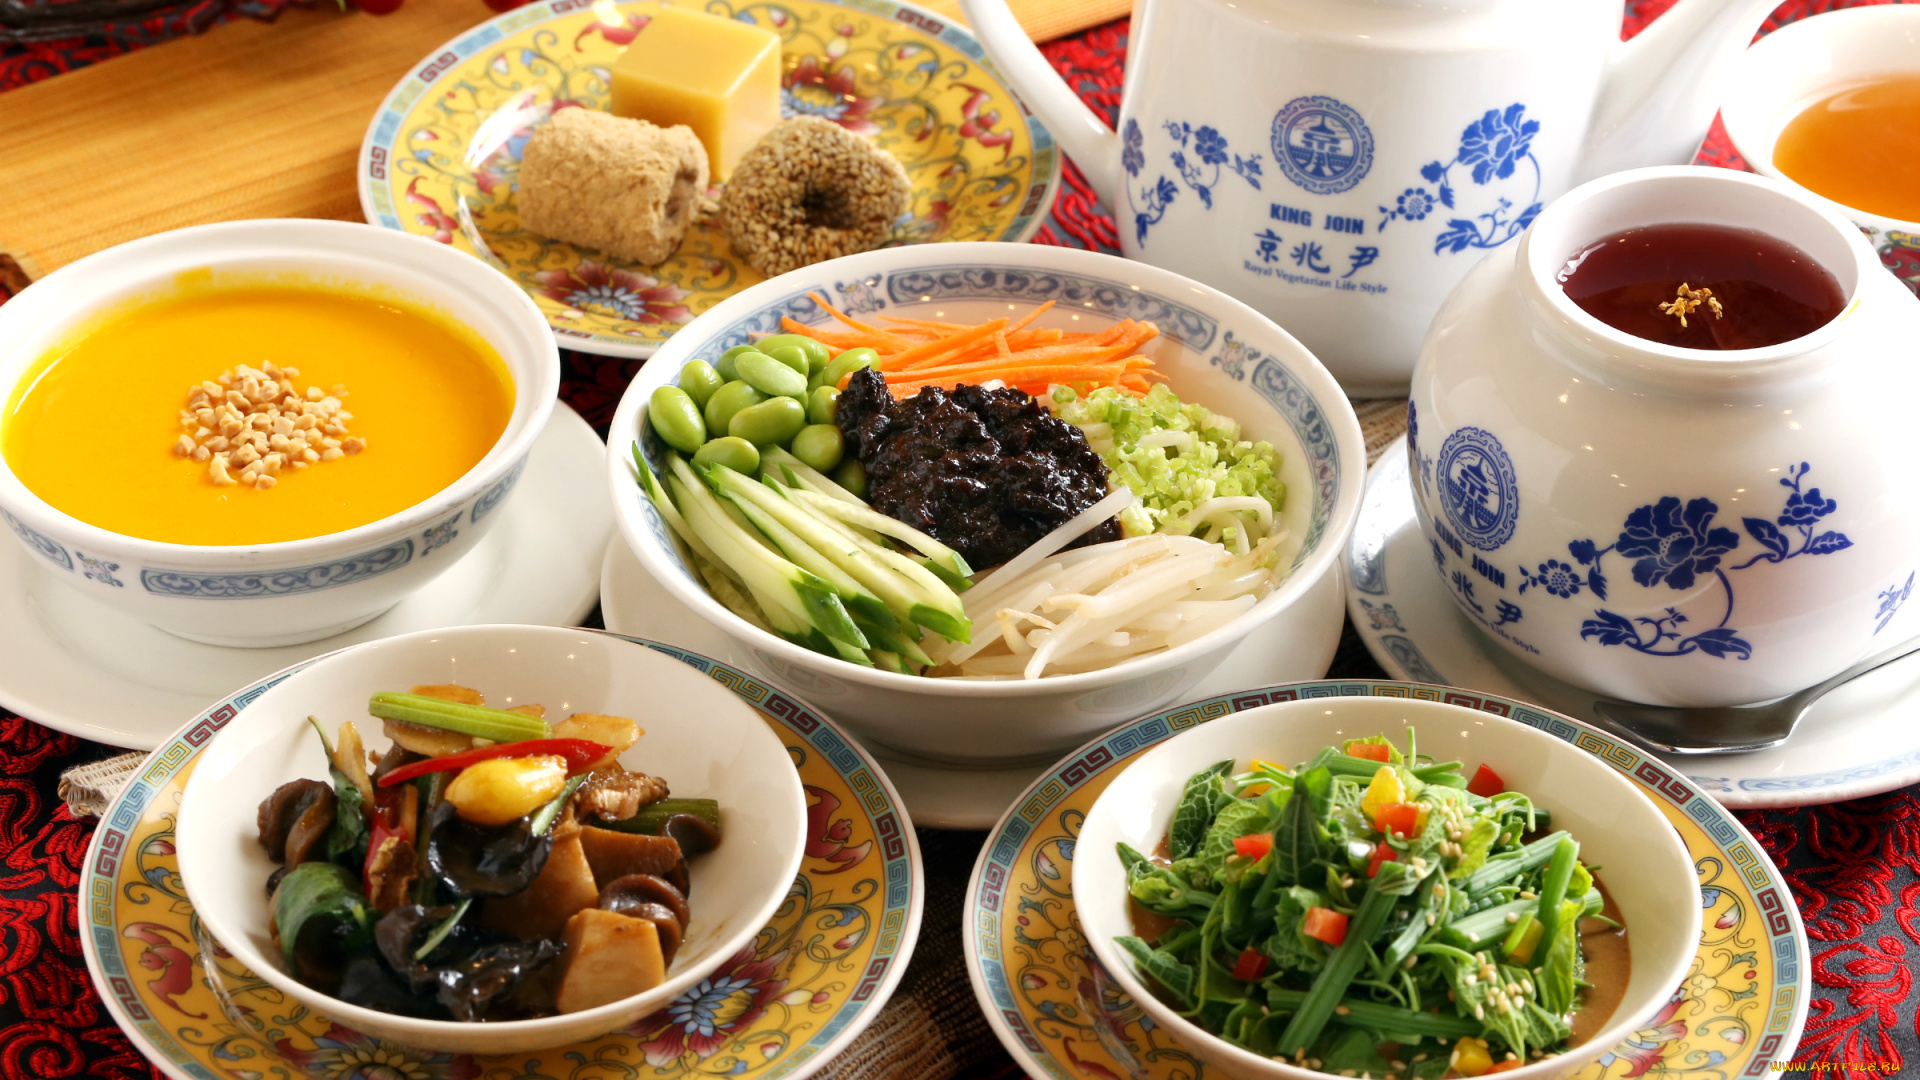 еда, разное, чай, посуда, овощи, суп, ассорти, блюда, японская, кухня